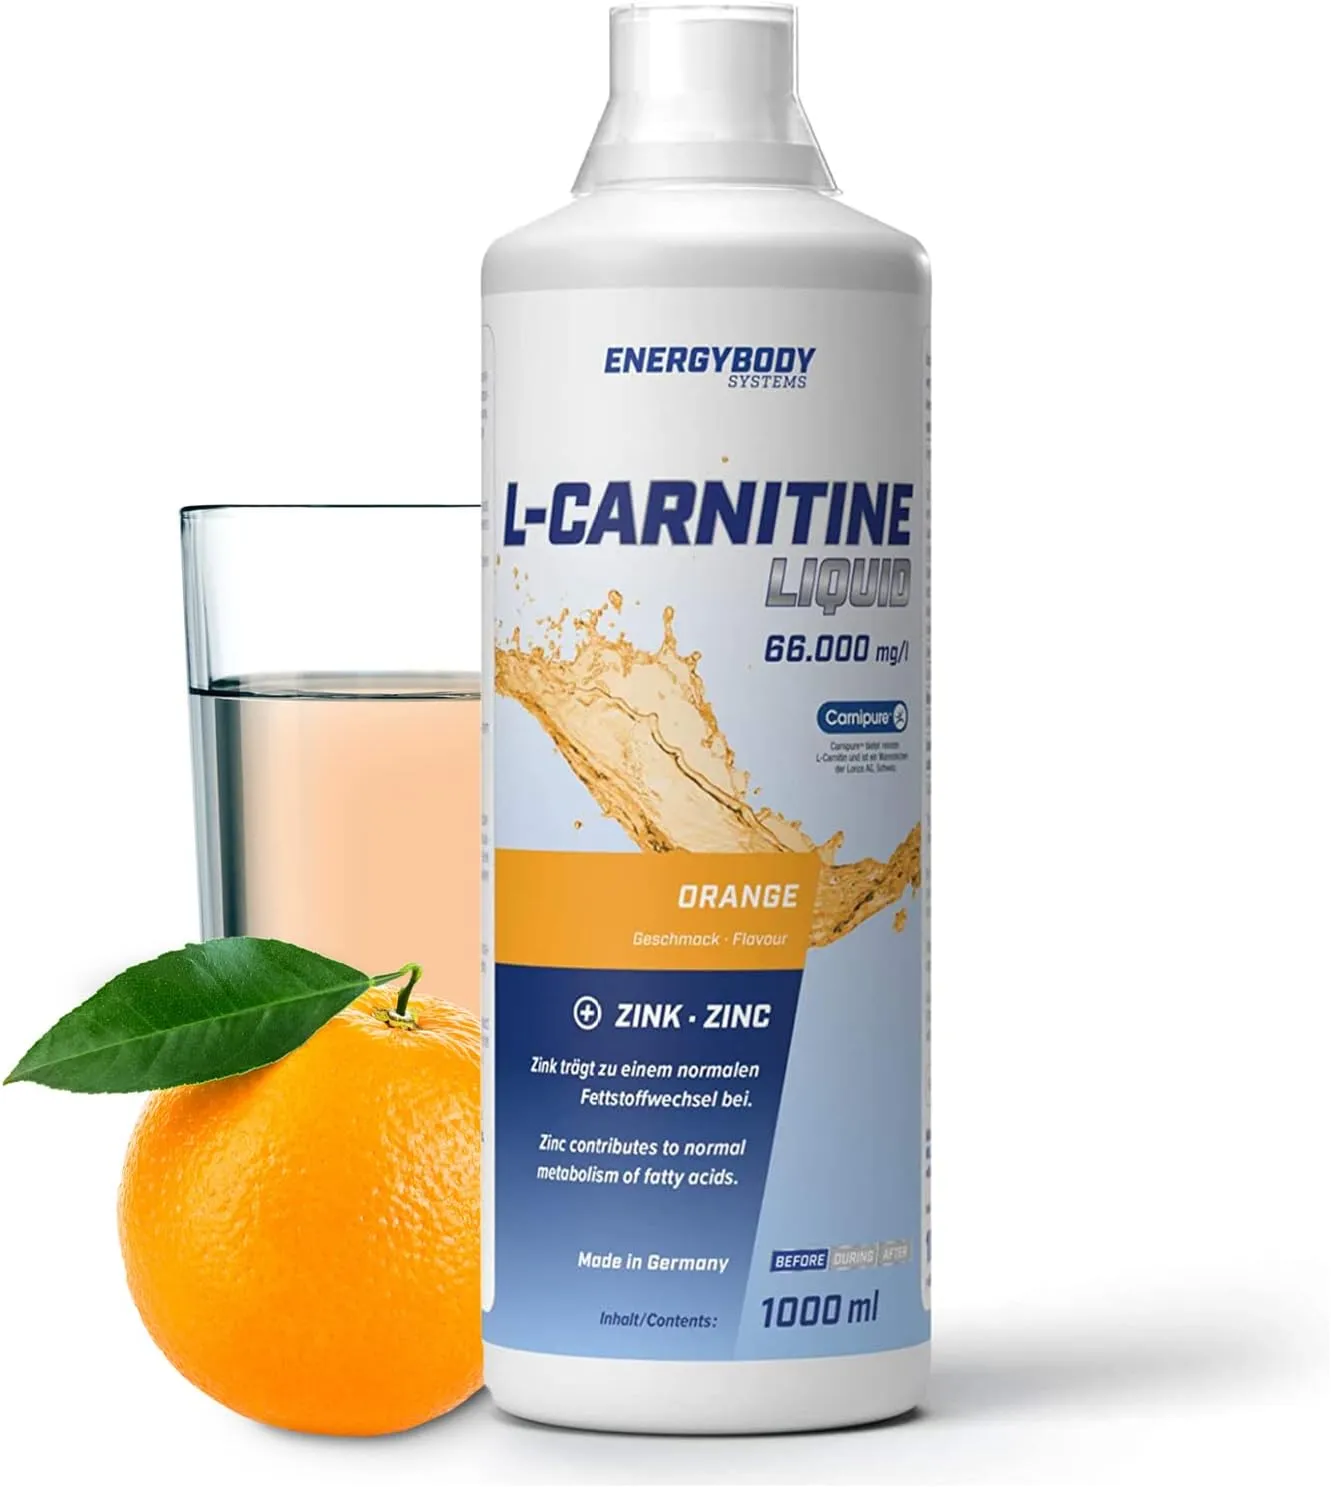 L-Carnitine Liquid 66.000 mg